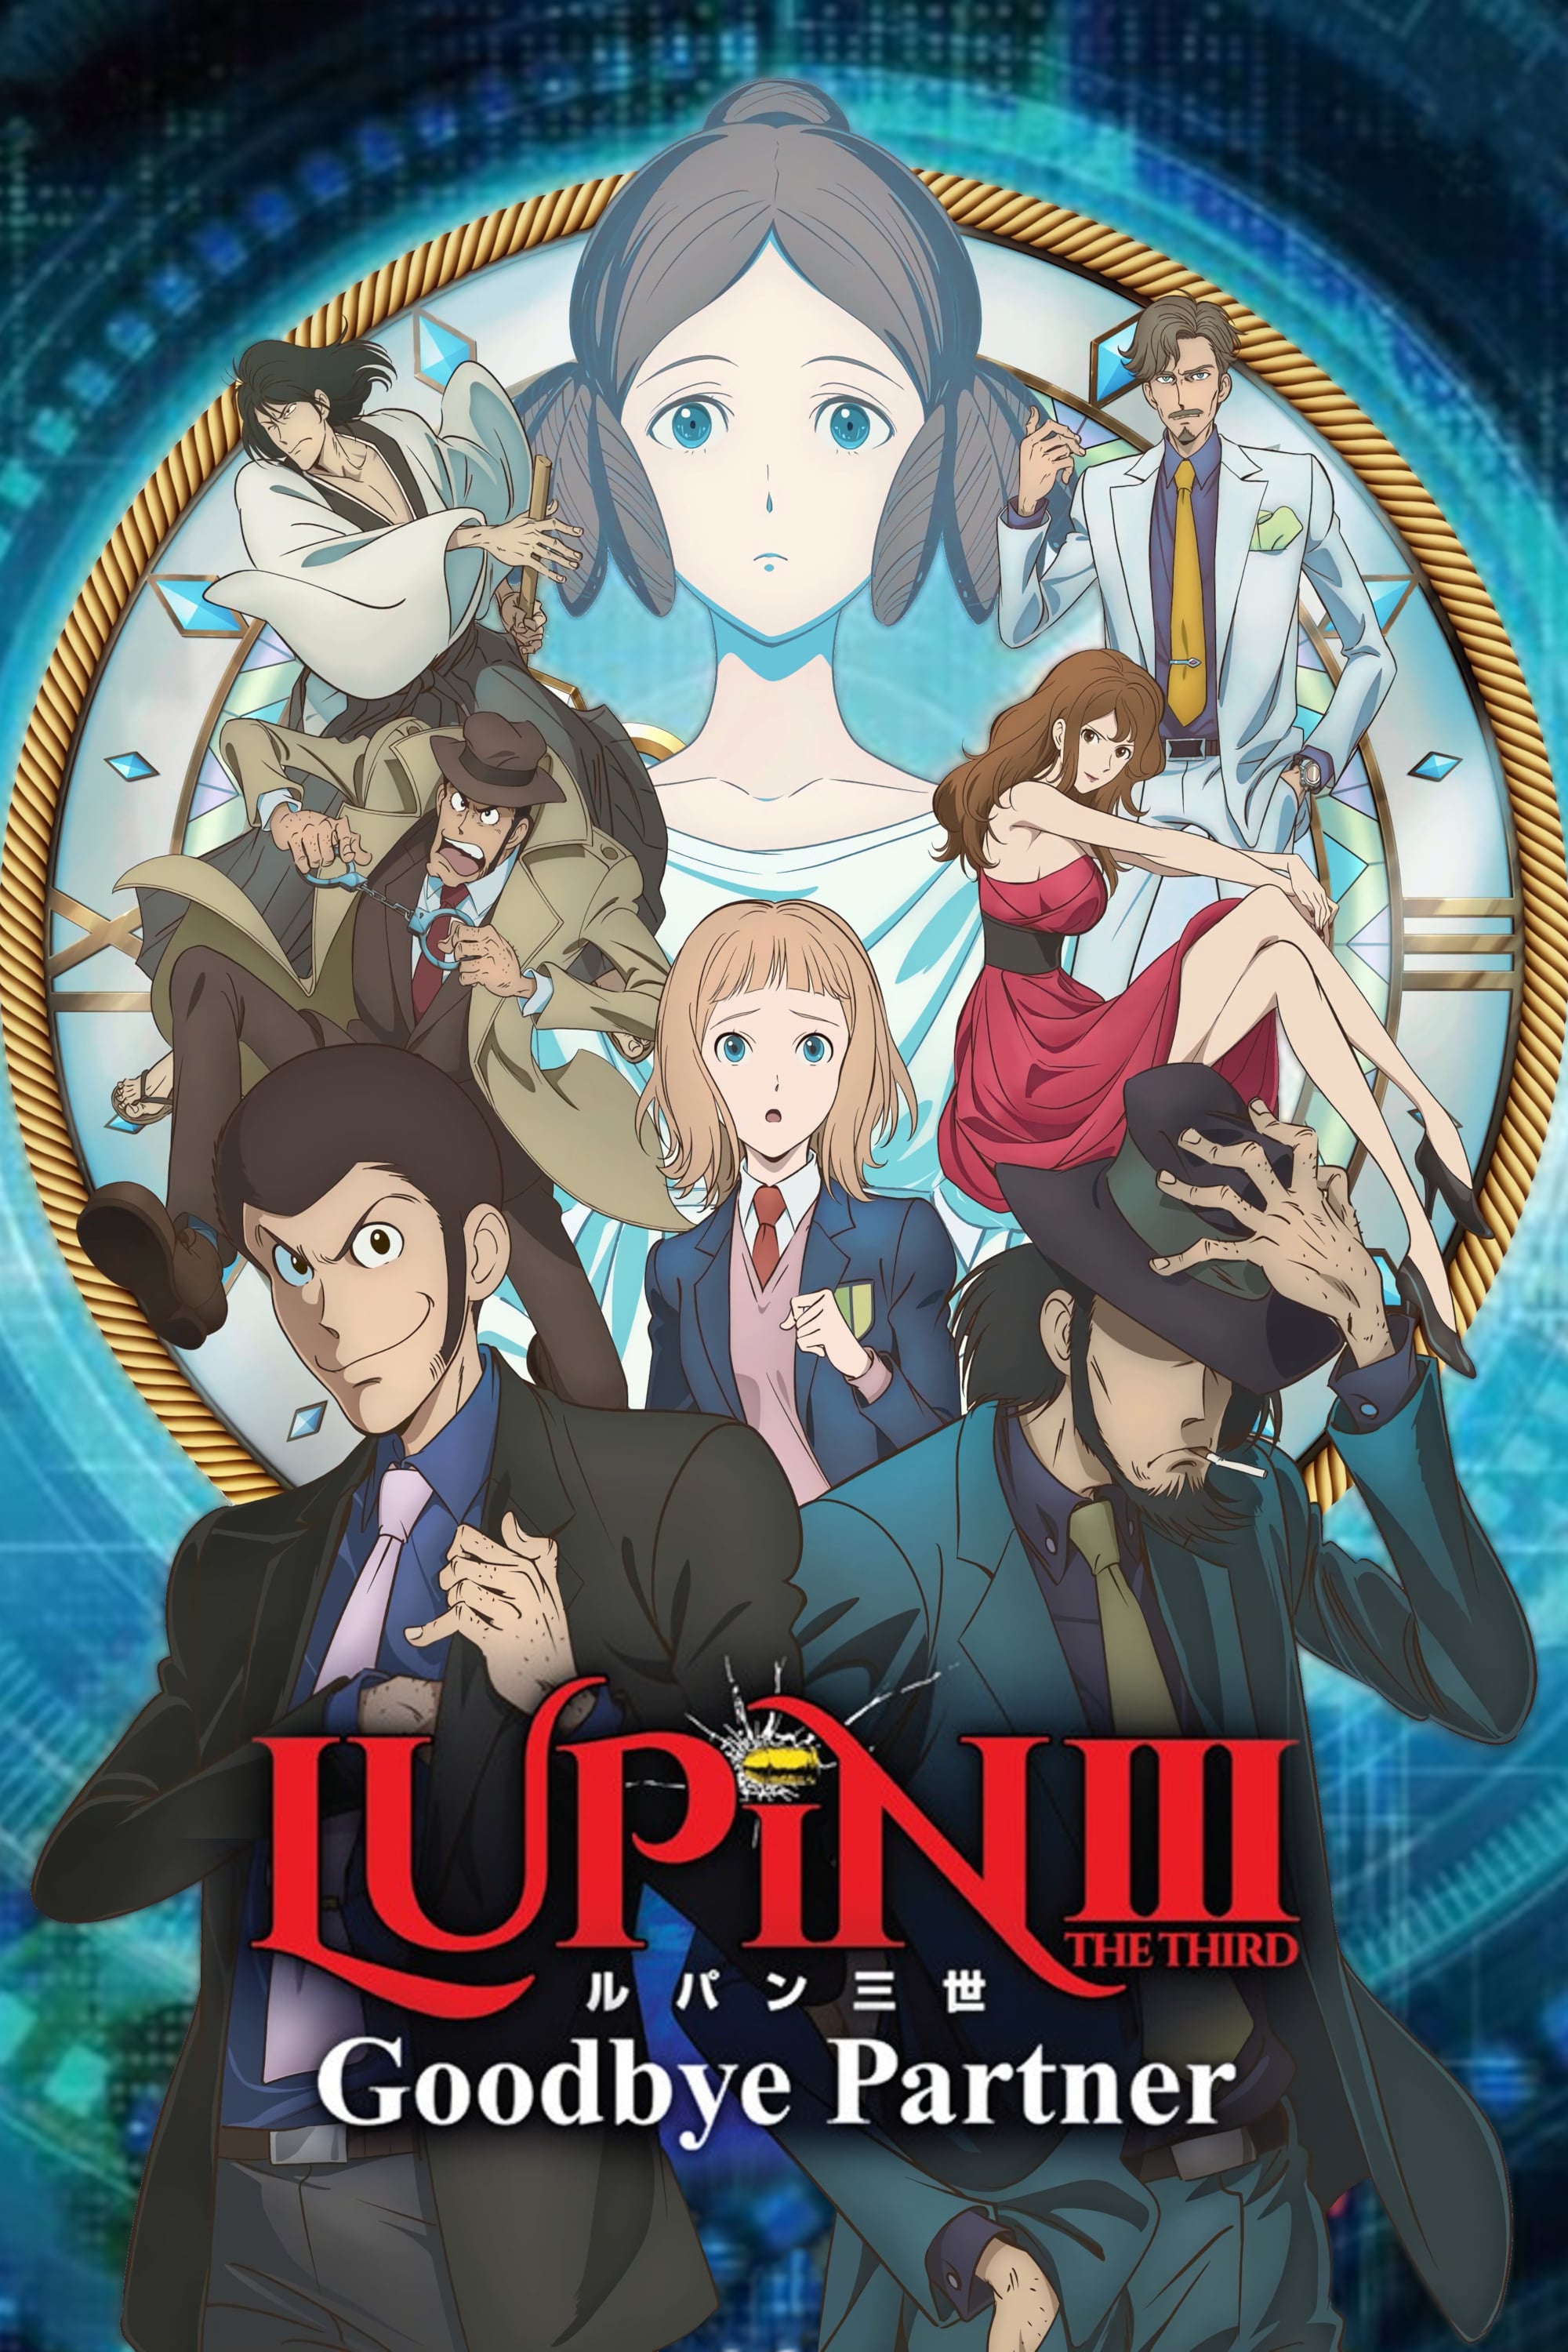 Lupin III : Goodbye Partner